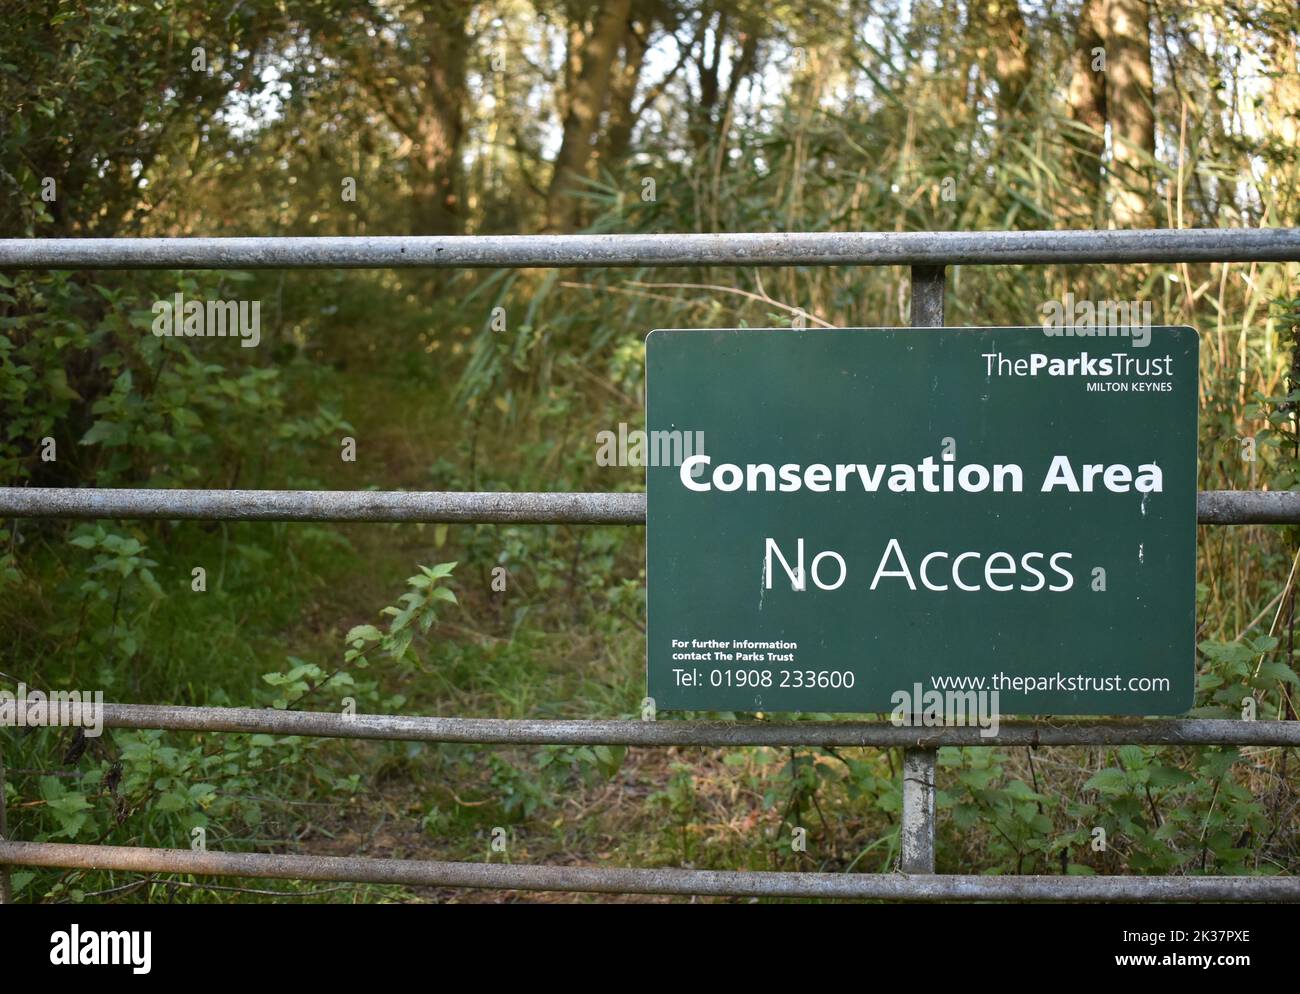 Melden Sie sich in einem Naturschutzgebiet in Milton Keynes an: 'Conservation Area No Access' mit Kopierbereich. Stockfoto